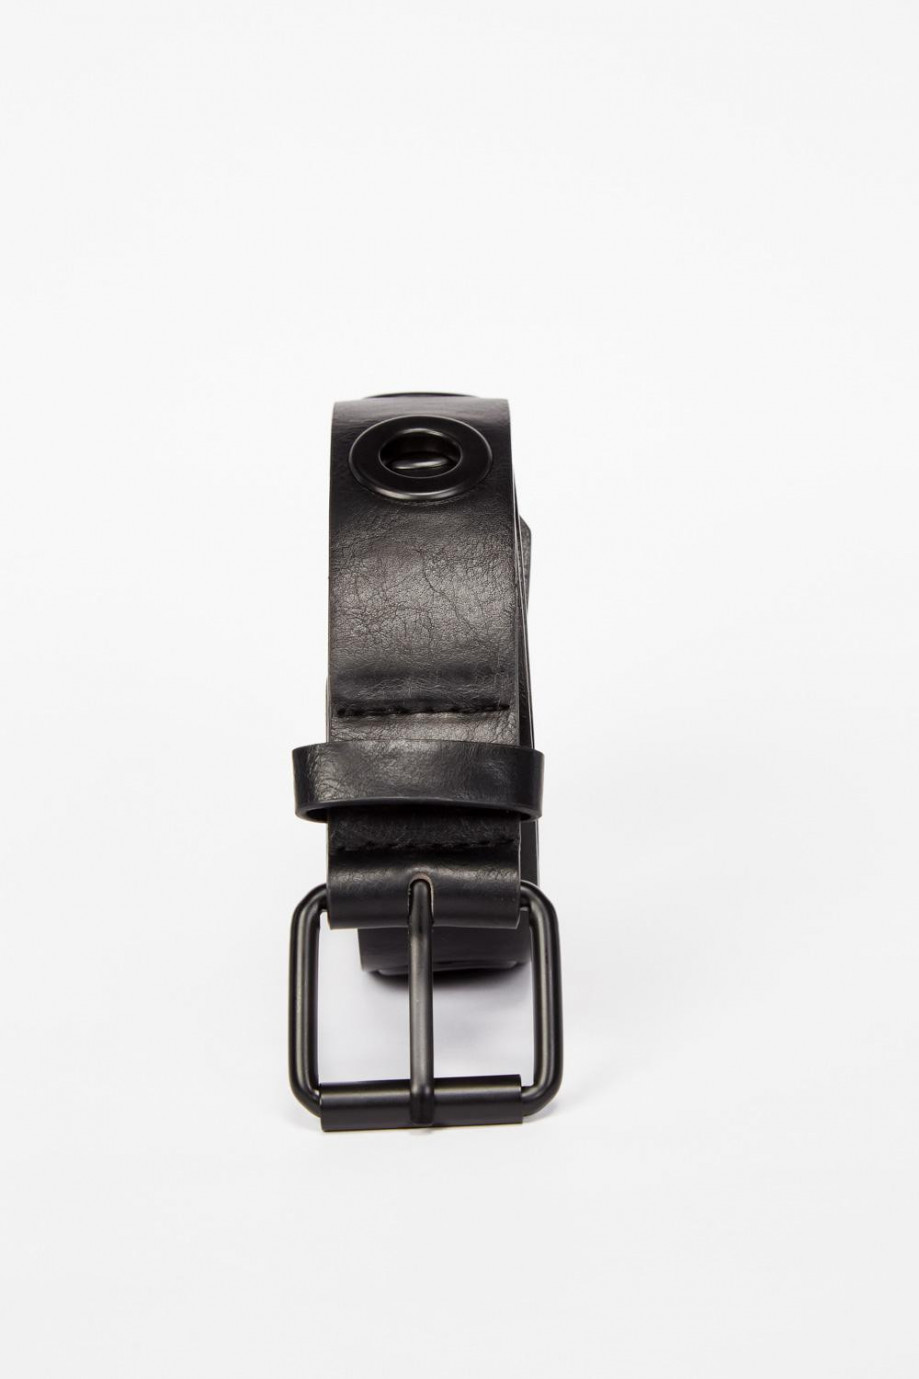 Cinturón en cuerina negro con hebilla cuadrada y ojaletes metálicos